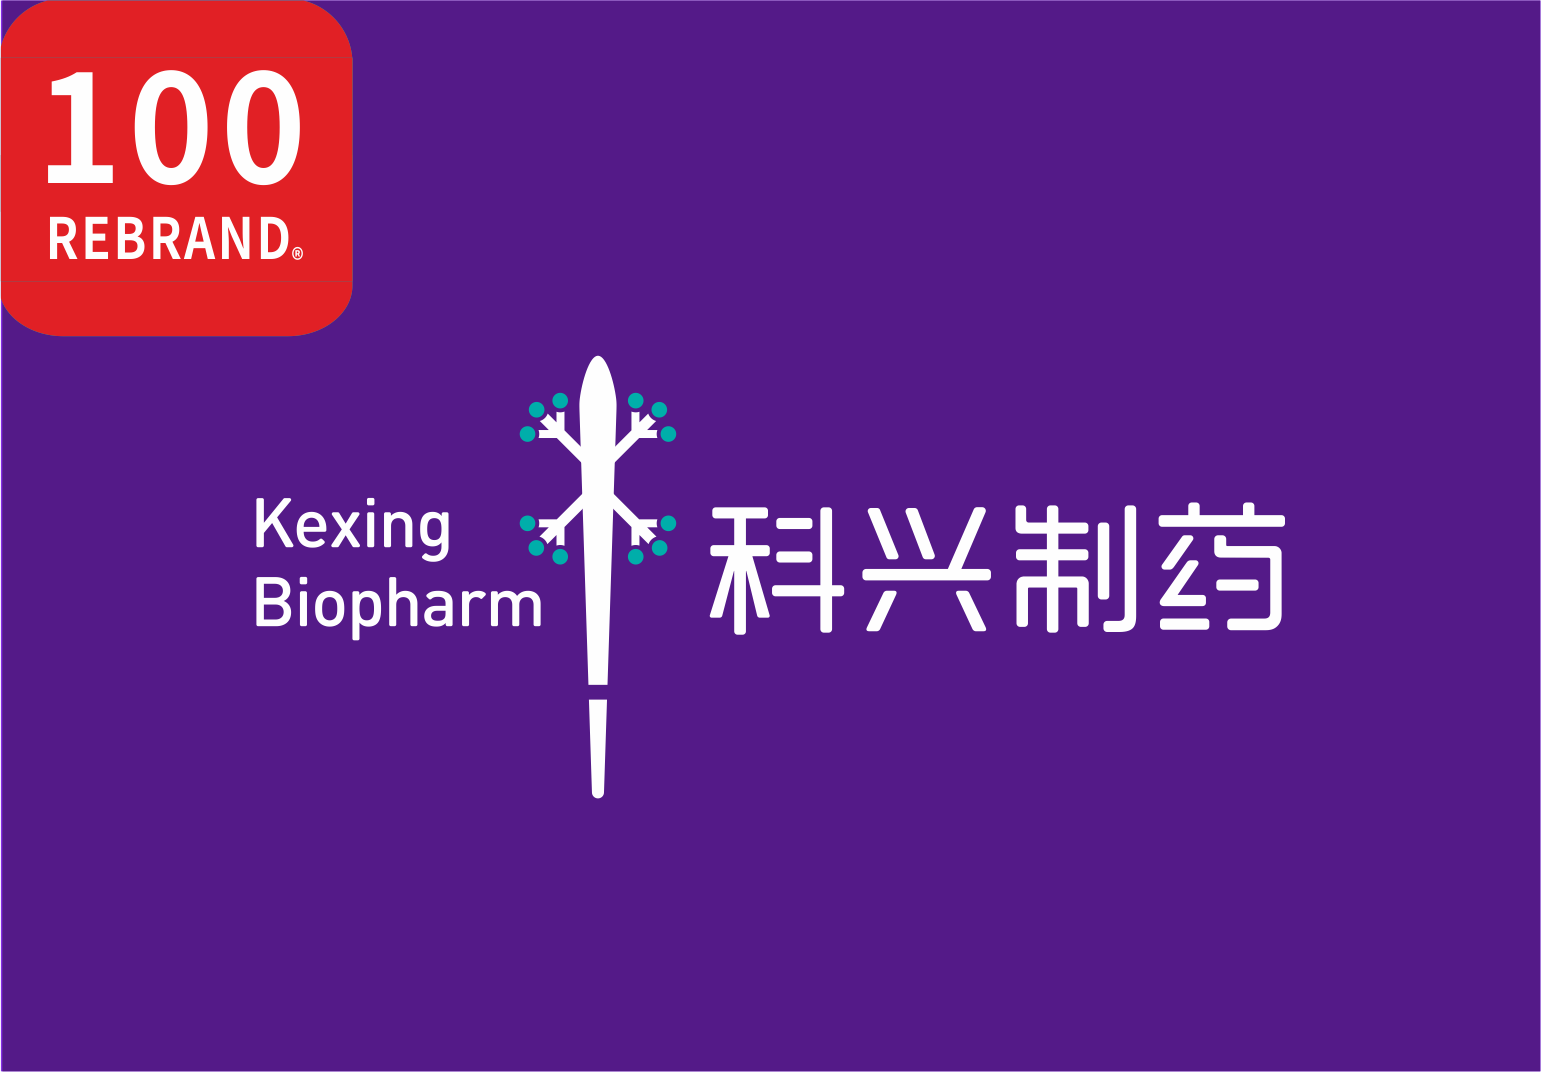 科兴制药品牌焕新项目喜获“REBRAND 100®”国际大奖